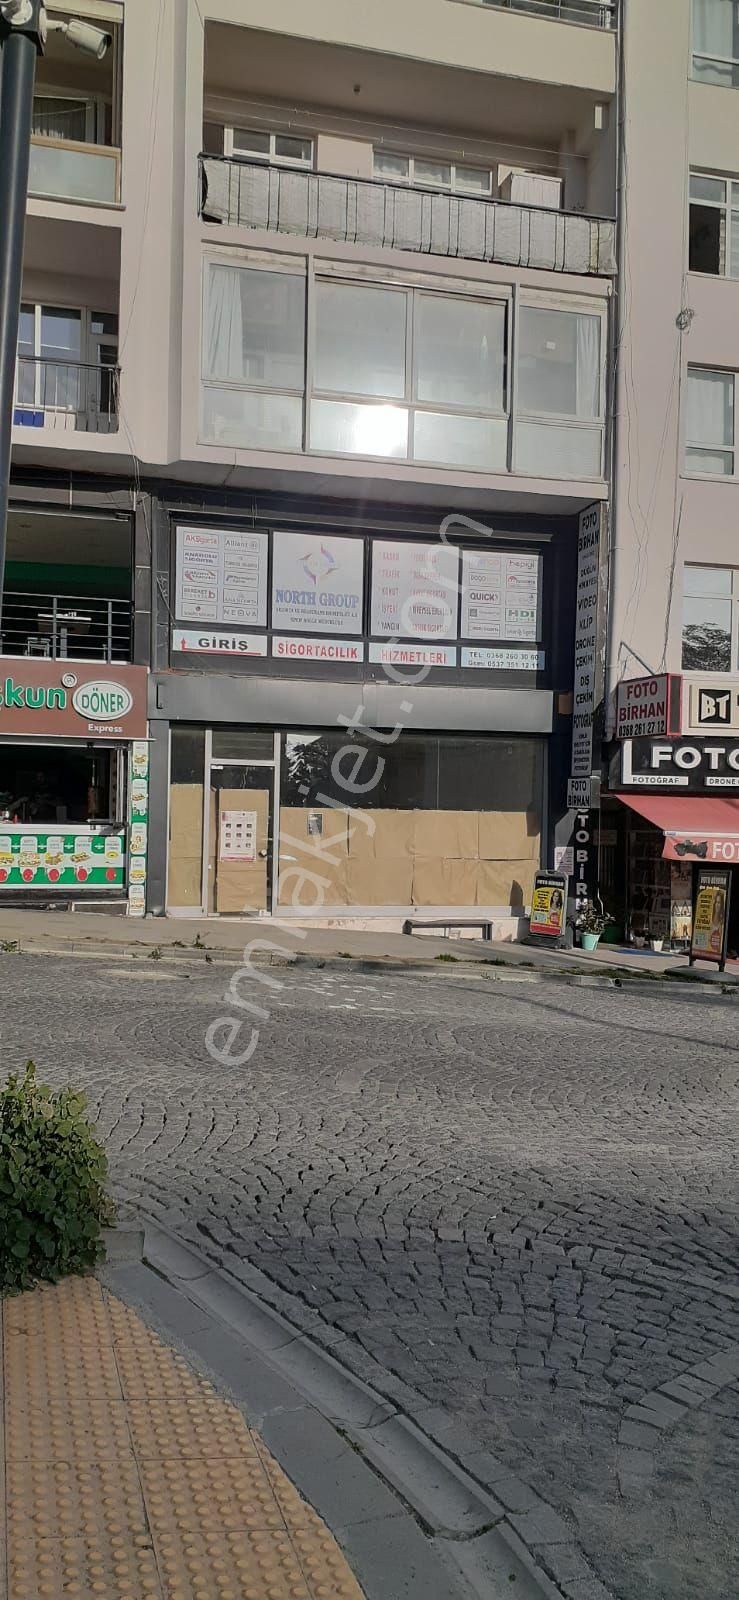 Sinop Merkez Camikebir Kiralık Dükkan & Mağaza kuvars emlak'tan (KİRALIK DÜKKAN) detaylar için tıklayınız